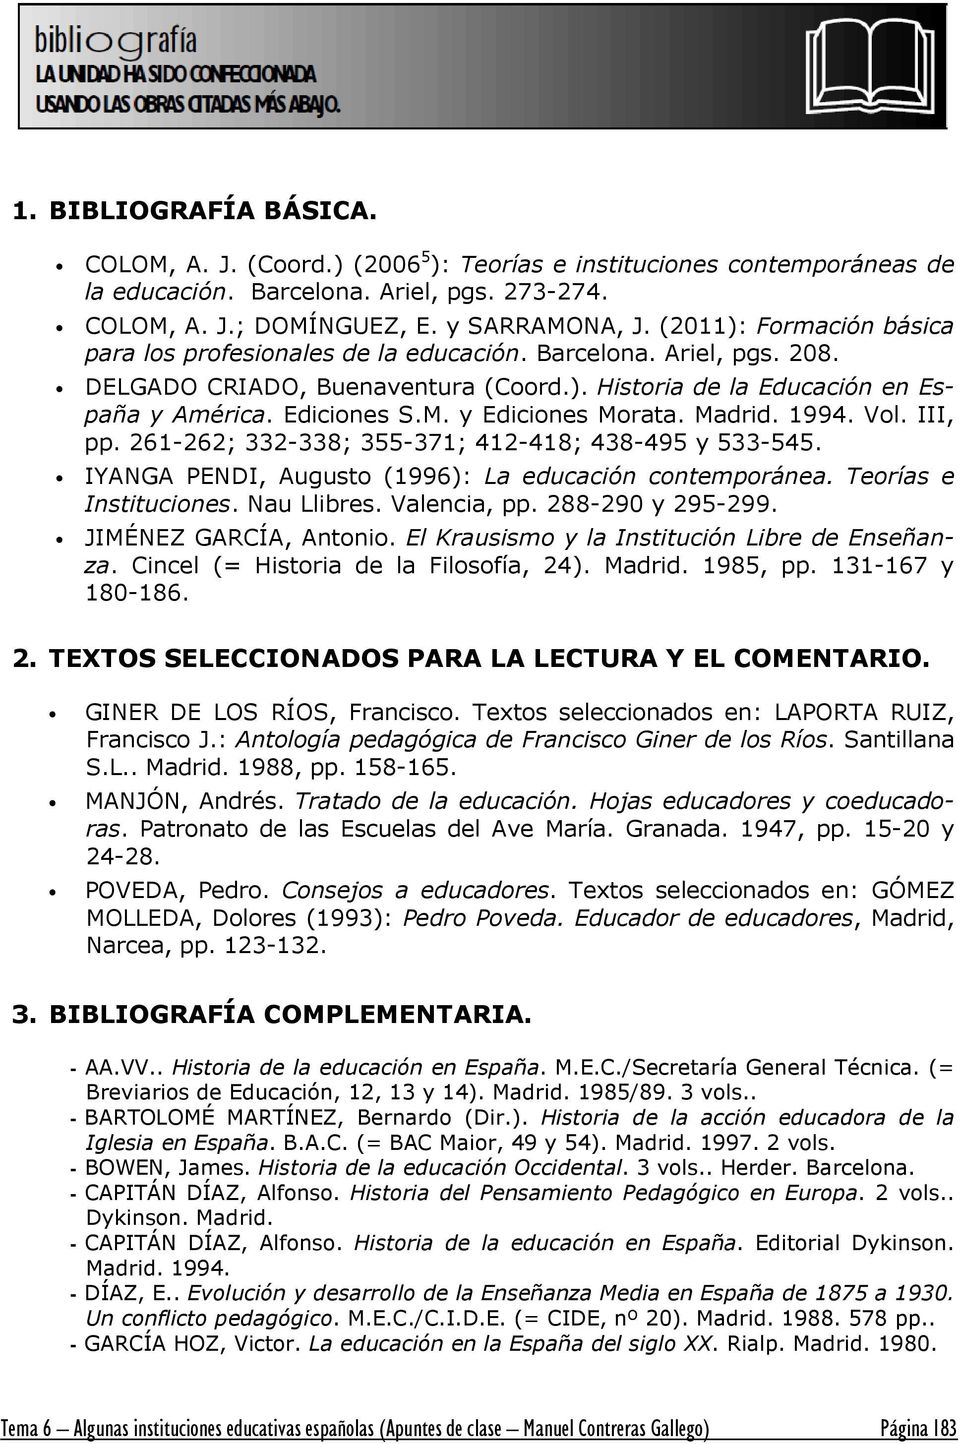 y Ediciones Morata. Madrid. 1994. Vol. III, pp. 261-262; 332-338; 355-371; 412-418; 438-495 y 533-545. IYANGA PENDI, Augusto (1996): La educación contemporánea. Teorías e Instituciones. Nau Llibres.